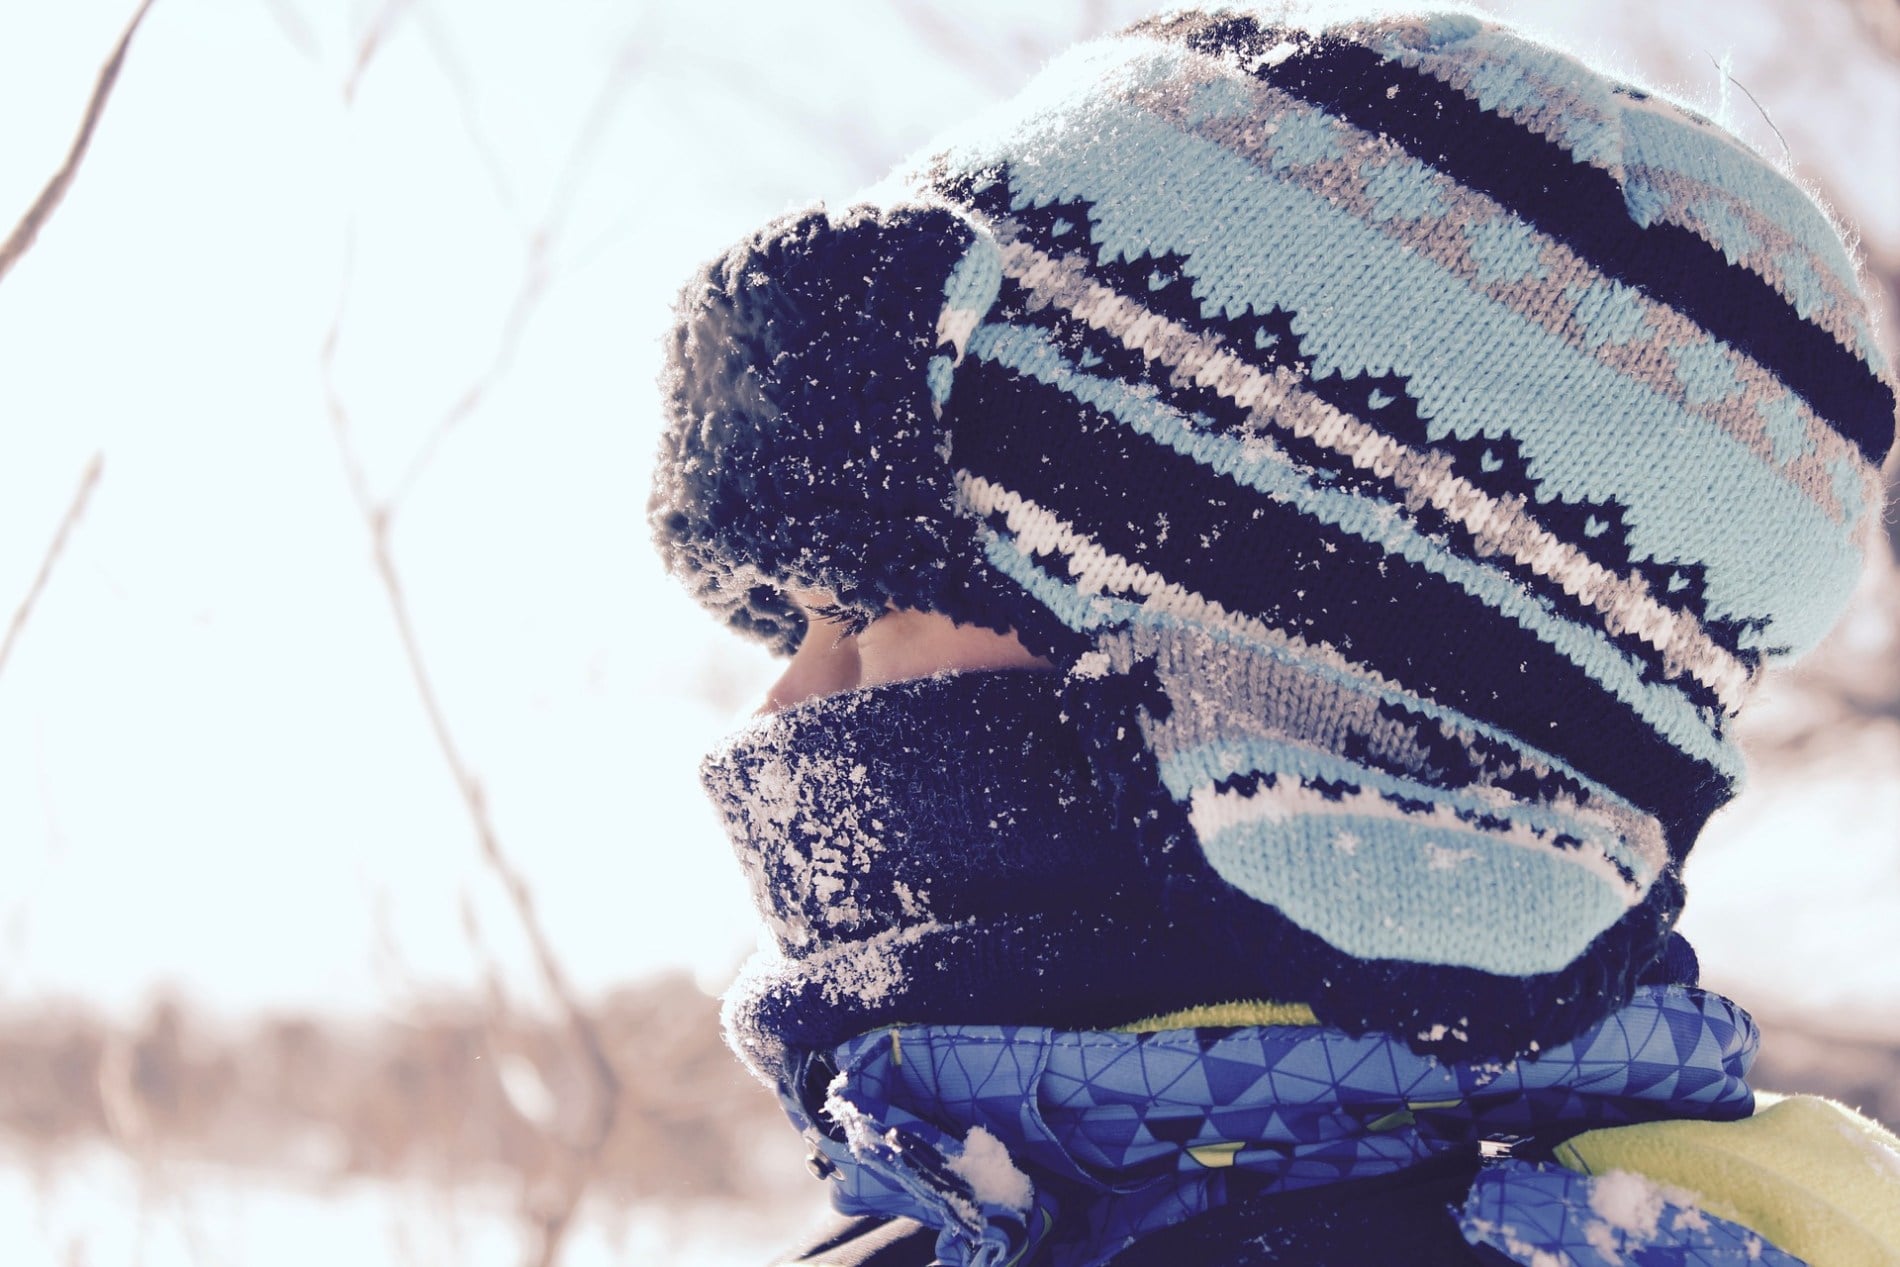 Безопасность, Медицина и здоровье, Томские новости, обморожение люди пострадали от холода заболели В Томской области почти 30 человек пострадали от морозов за прошедшую неделю